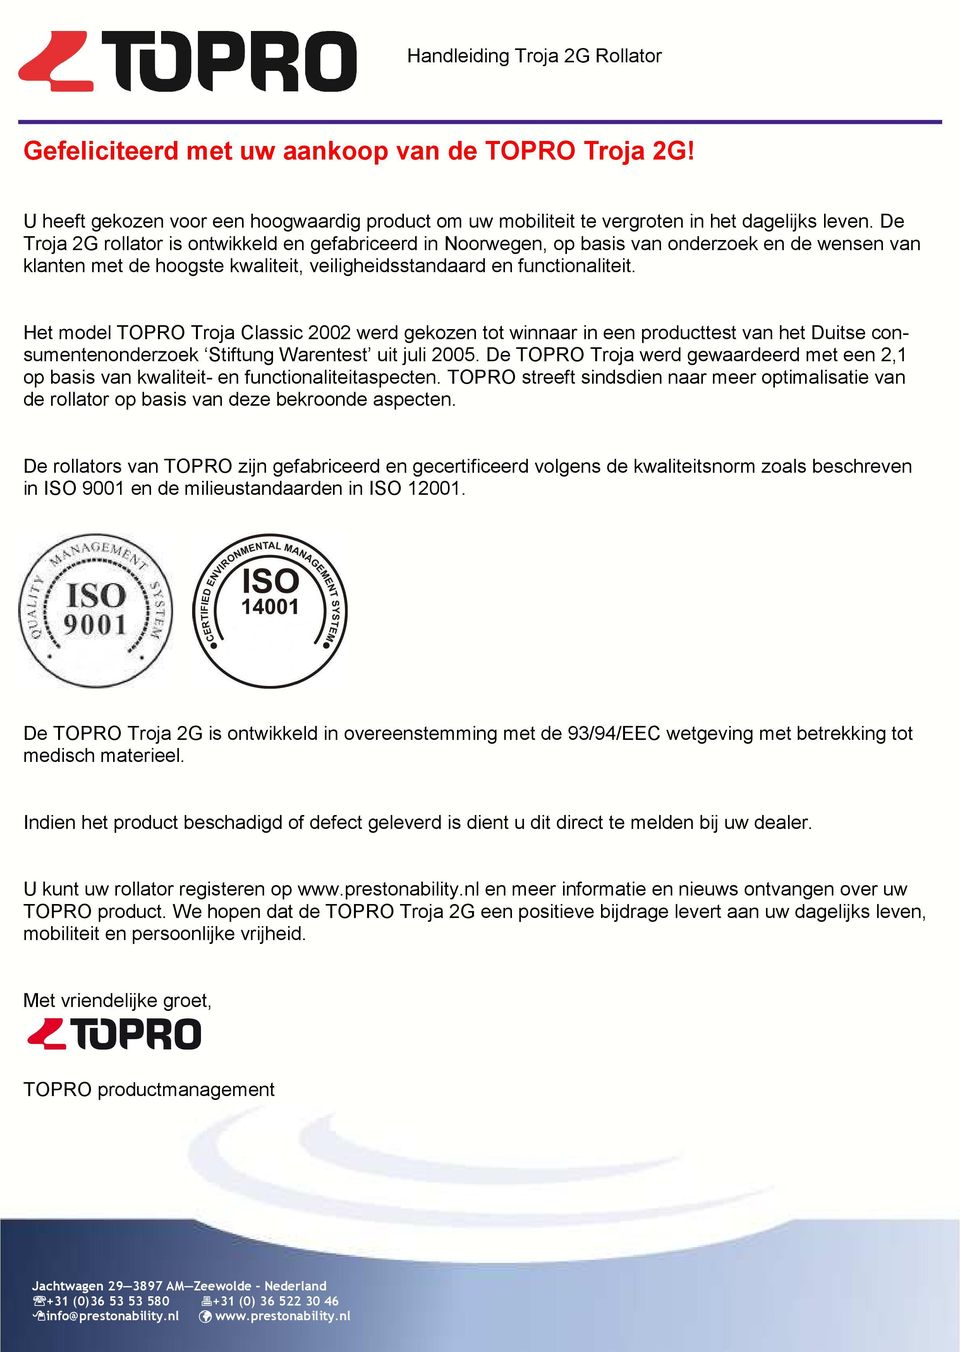 Het model TOPRO Troja Classic 2002 werd gekozen tot winnaar in een producttest van het Duitse consumentenonderzoek Stiftung Warentest uit juli 2005.